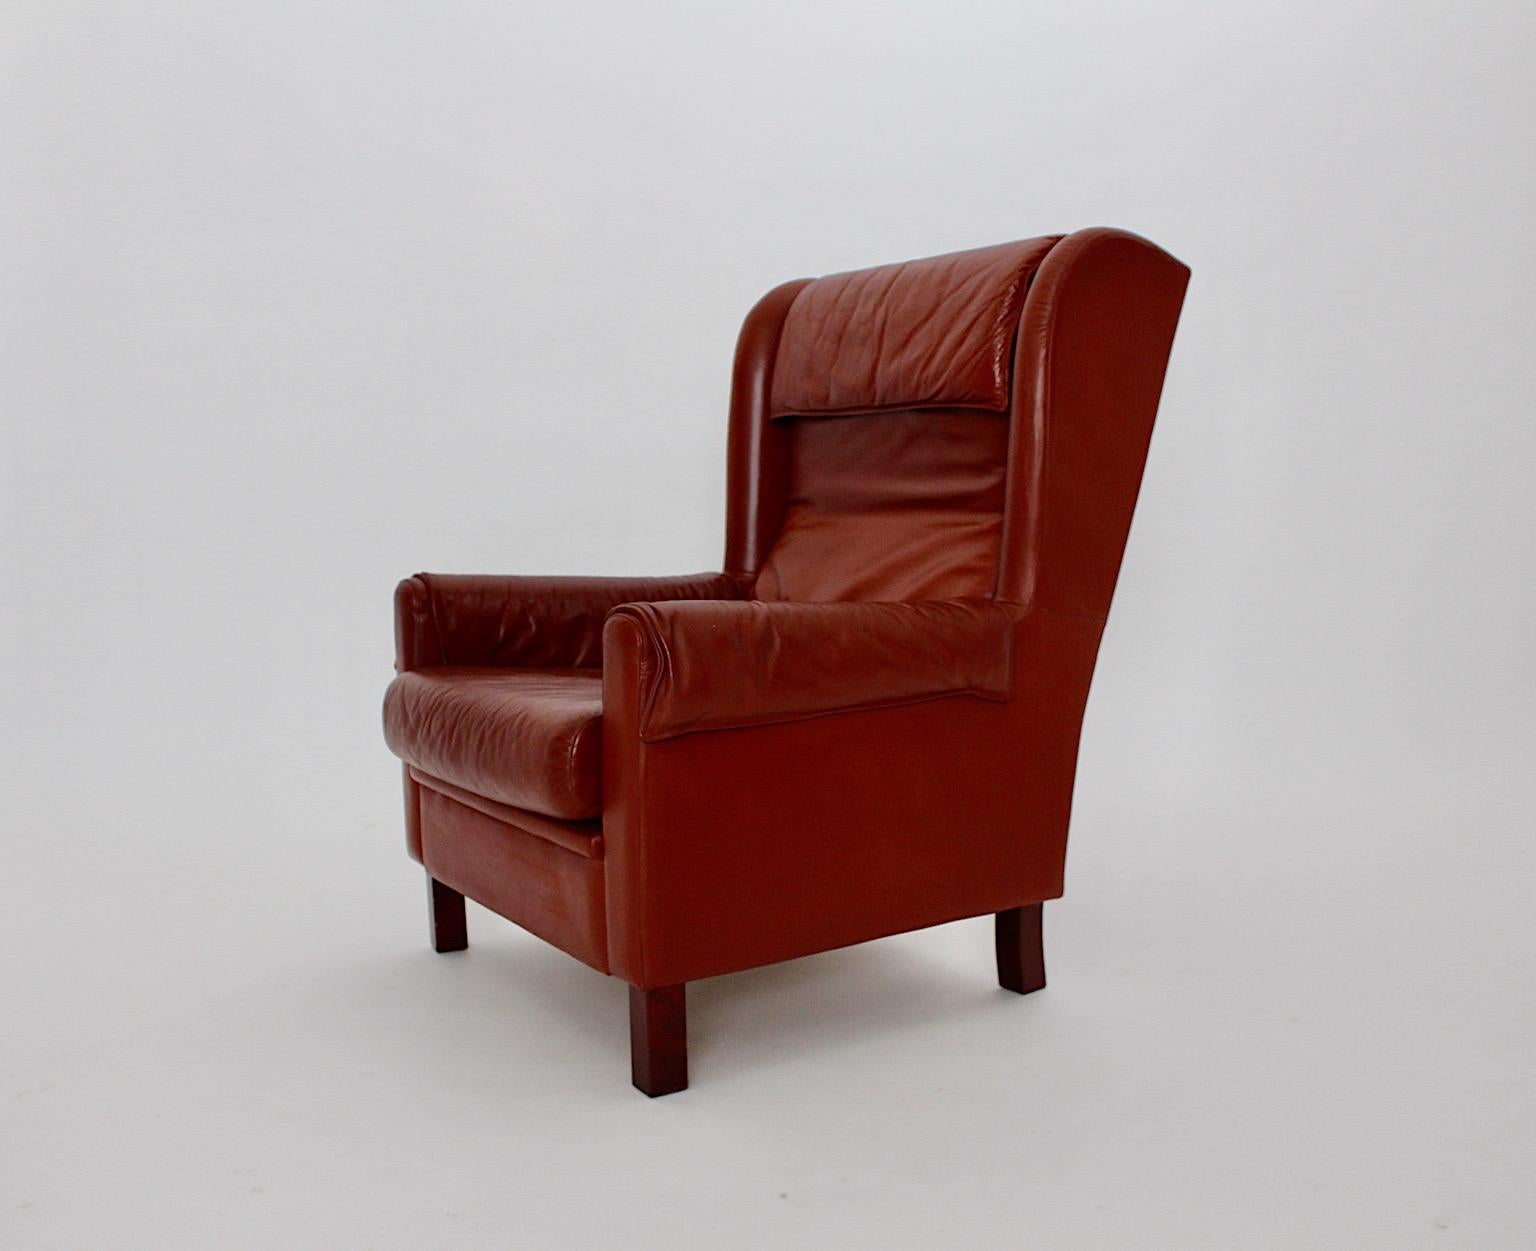 Leder Vintage Ohrensessel oder Sessel aus rötlich braunem Leder 1970er Jahre Österreich.
Der Vintage-Ledersessel hat zwei lose Kissen, die Füße sind aus Buche und Nussbaumfurnier gefertigt.
Der Ohrensessel oder Loungesessel ist perfekt, um ihn